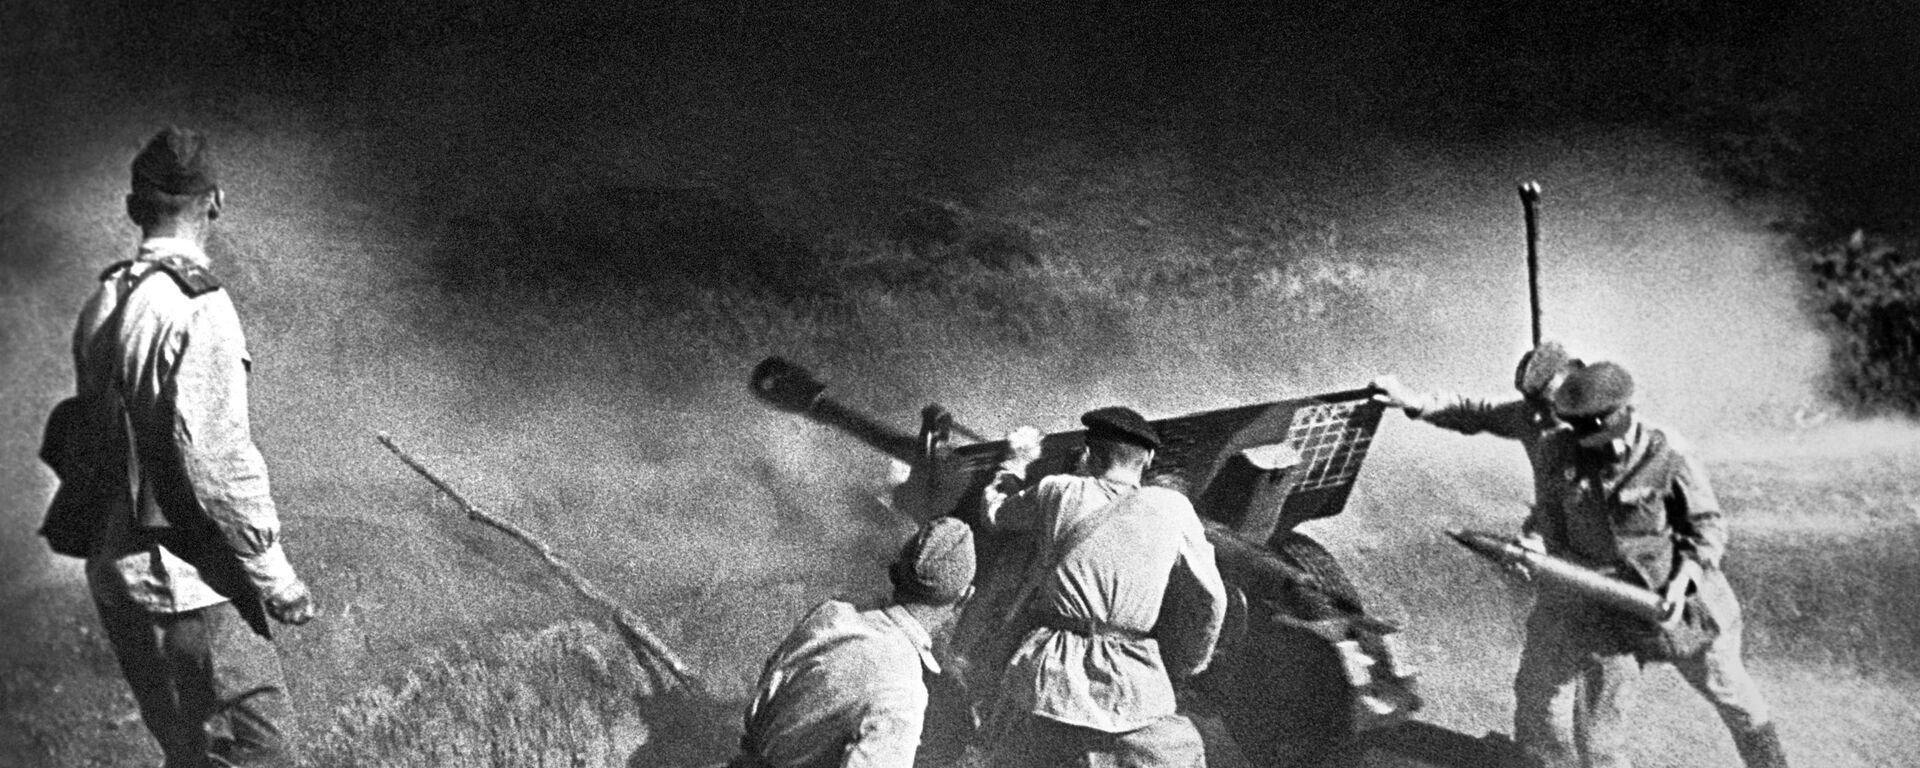 Tragedia y heroísmo del pueblo de la URSS en las imágenes de la Segunda Guerra Mundial - Sputnik Mundo, 1920, 06.05.2020